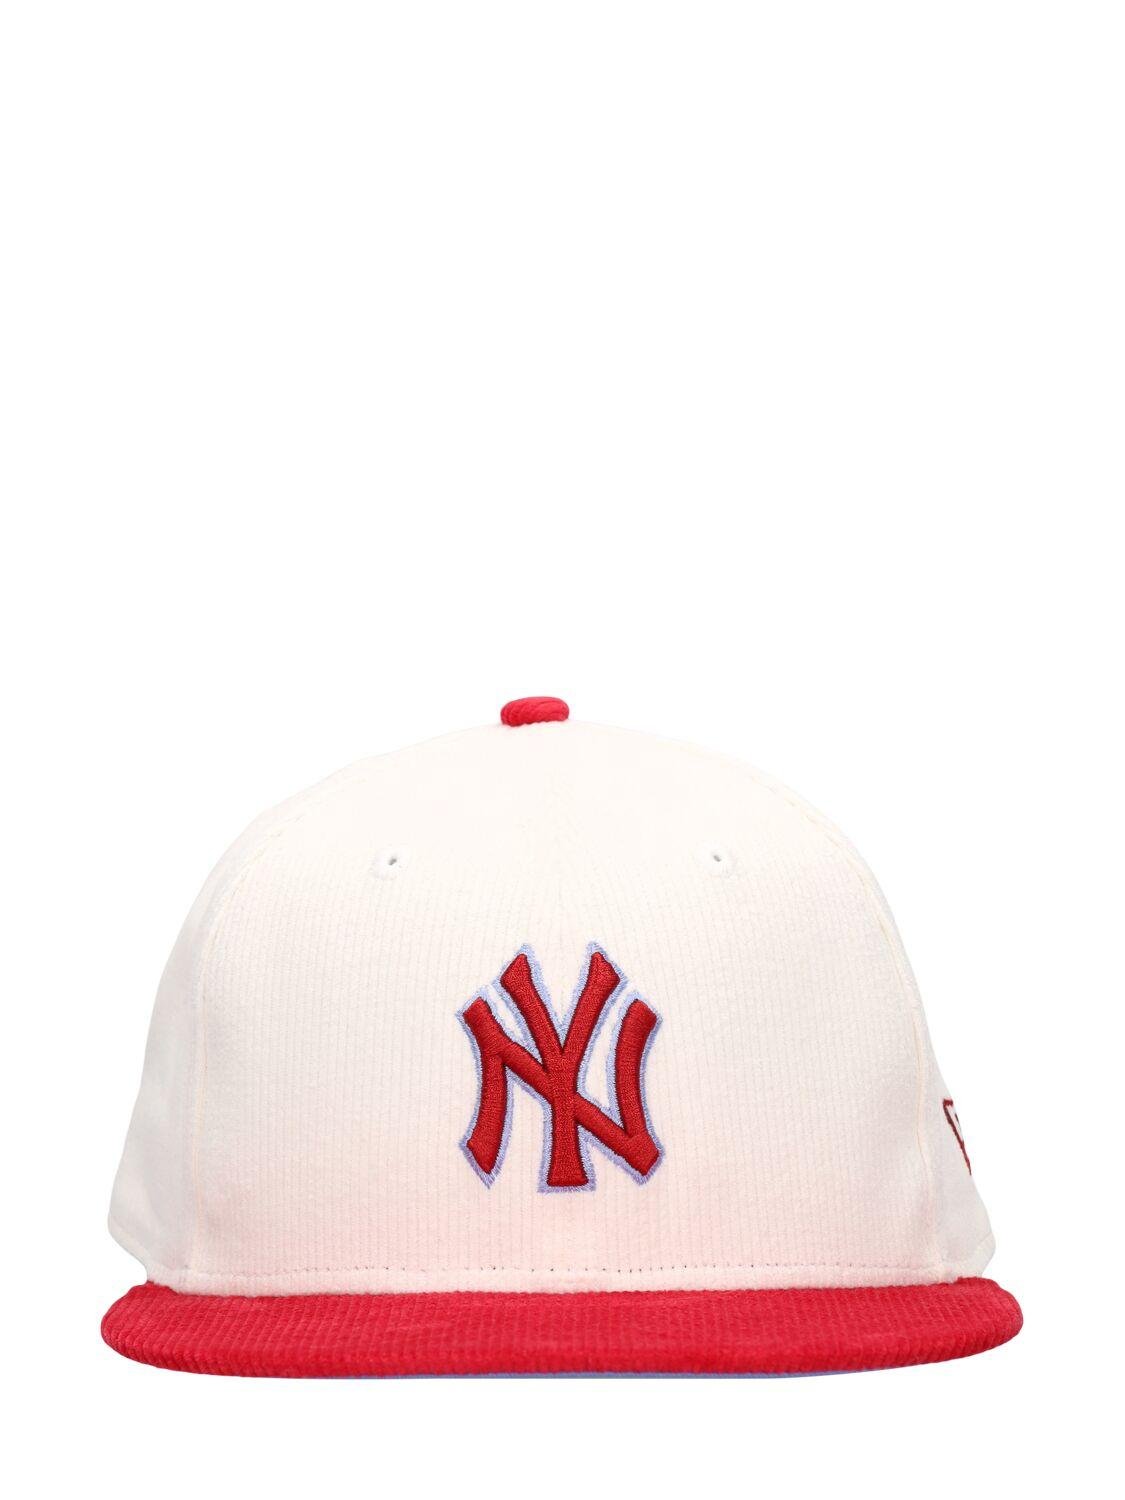 Ny Yankees 59fifty Cap by NEW ERA